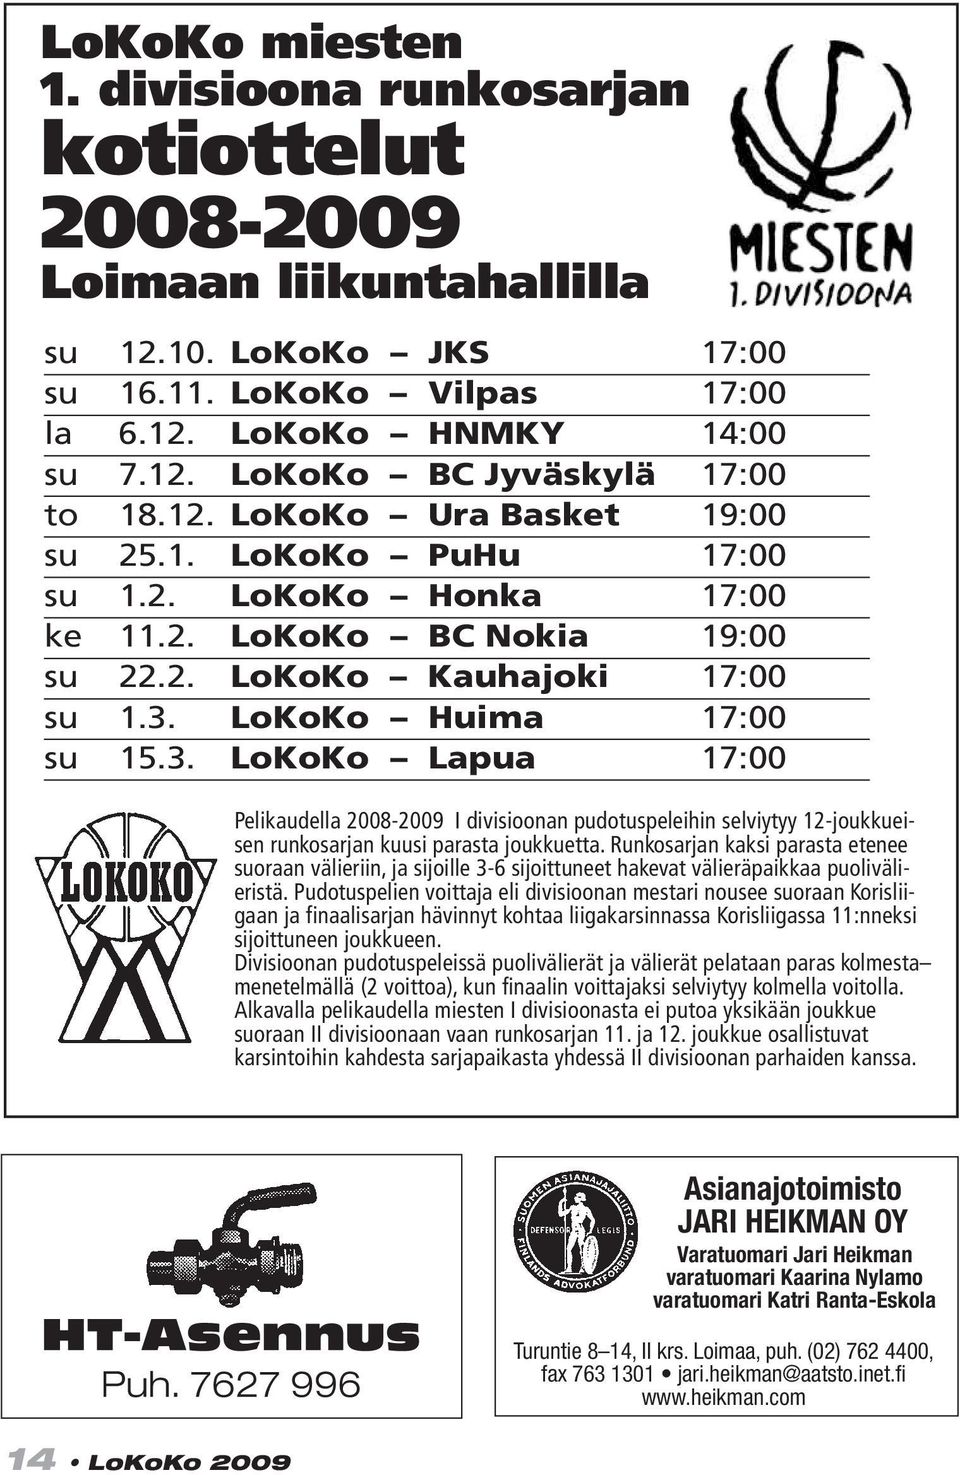 LoKoKo Huima 17:00 su 15.3. LoKoKo Lapua 17:00 Pelikaudella 2008-2009 I divisioonan pudotuspeleihin selviytyy 12-joukkueisen runkosarjan kuusi parasta joukkuetta.